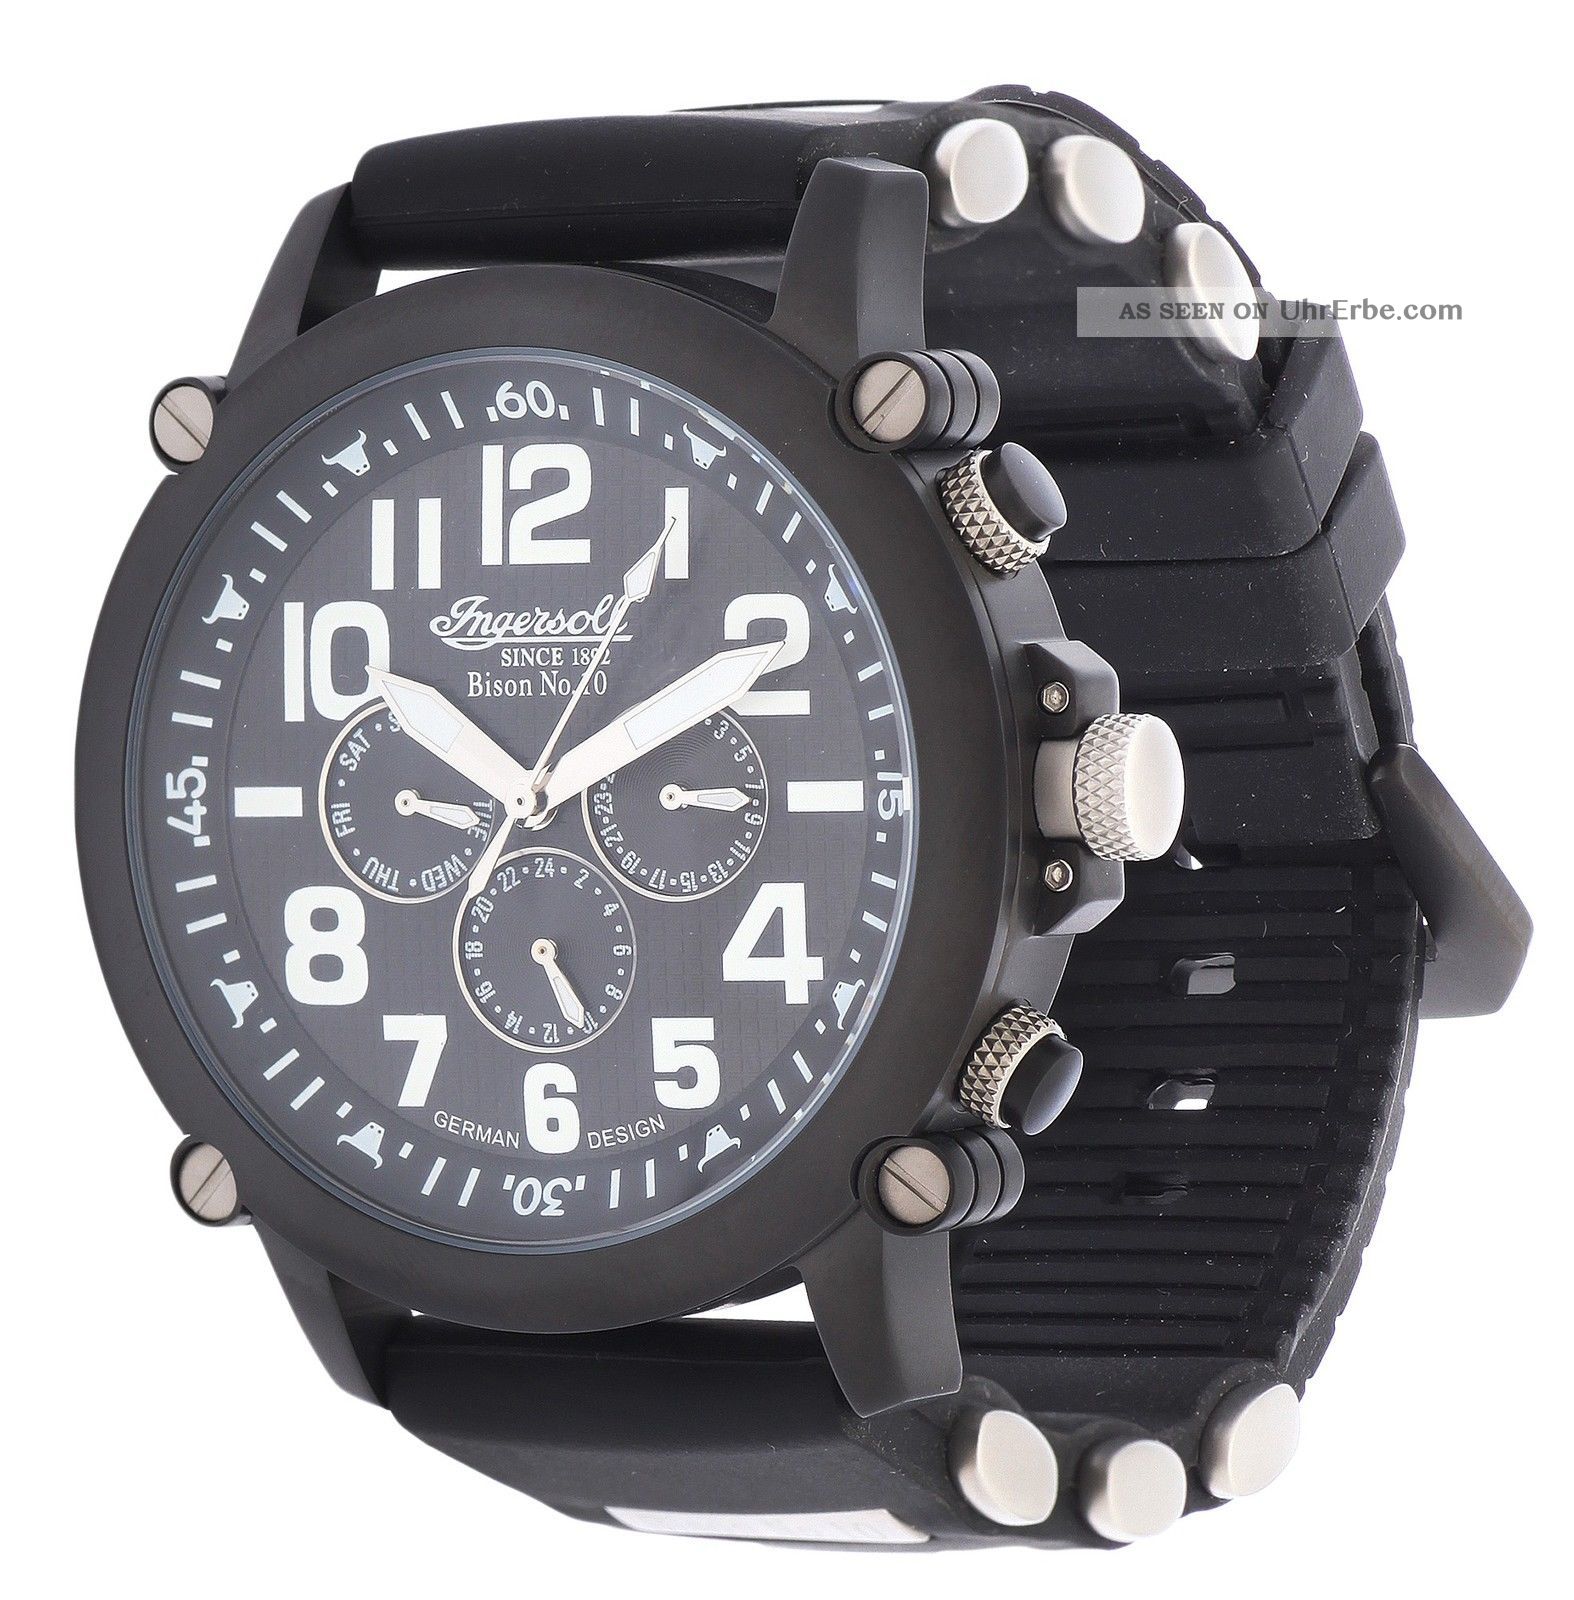 Ingersoll Herren Automatik Uhr Bison No.  10 Schwarz In1610bbk Armbanduhren Bild